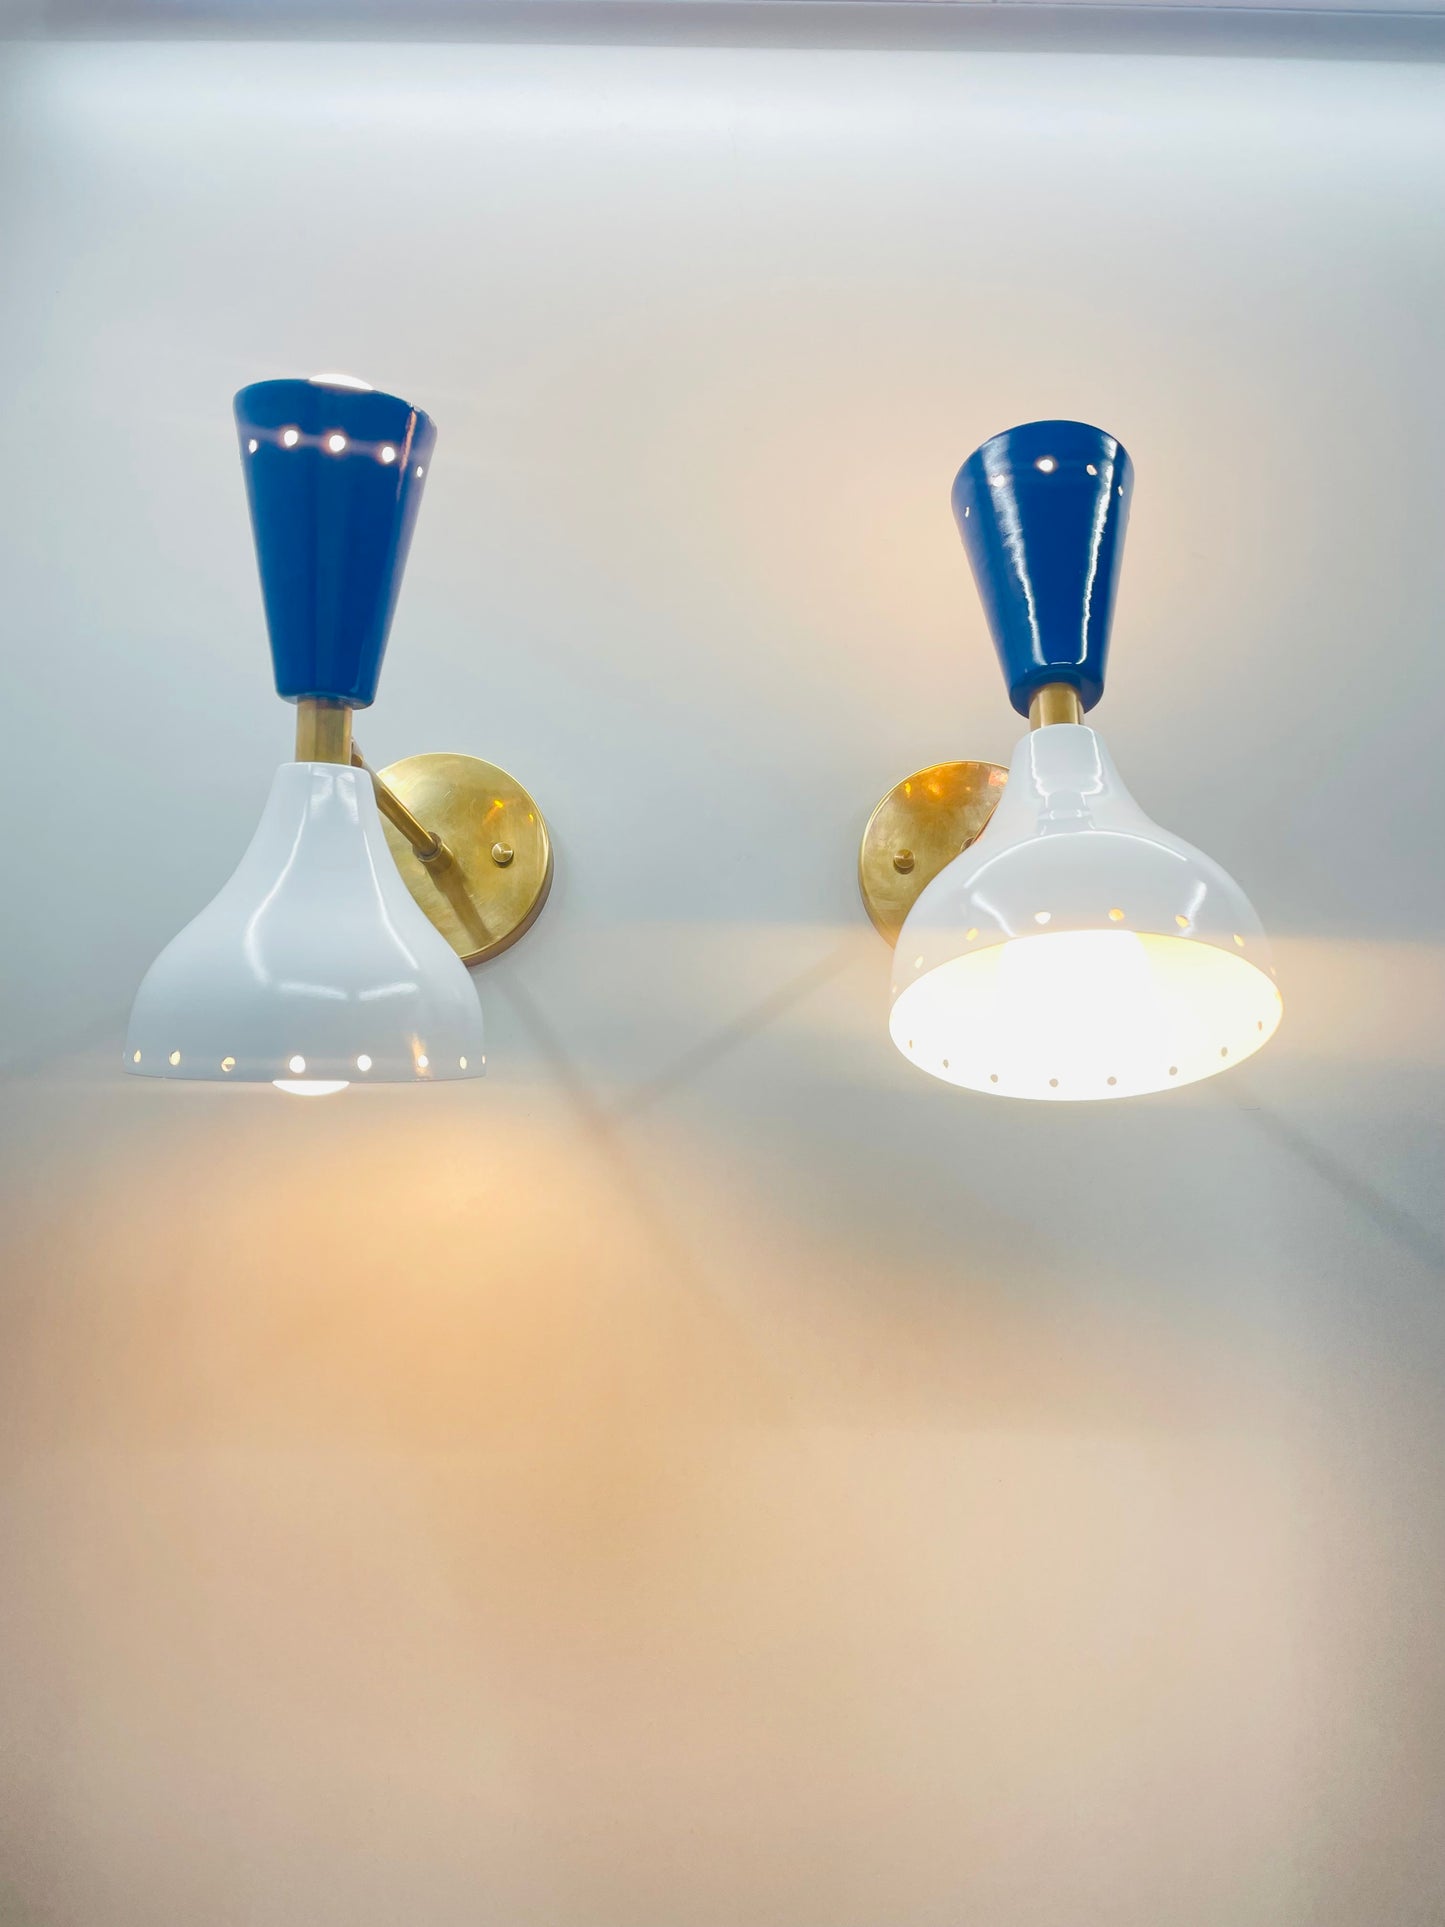 Stylish Italian Wall Light Lamps - Set of Two